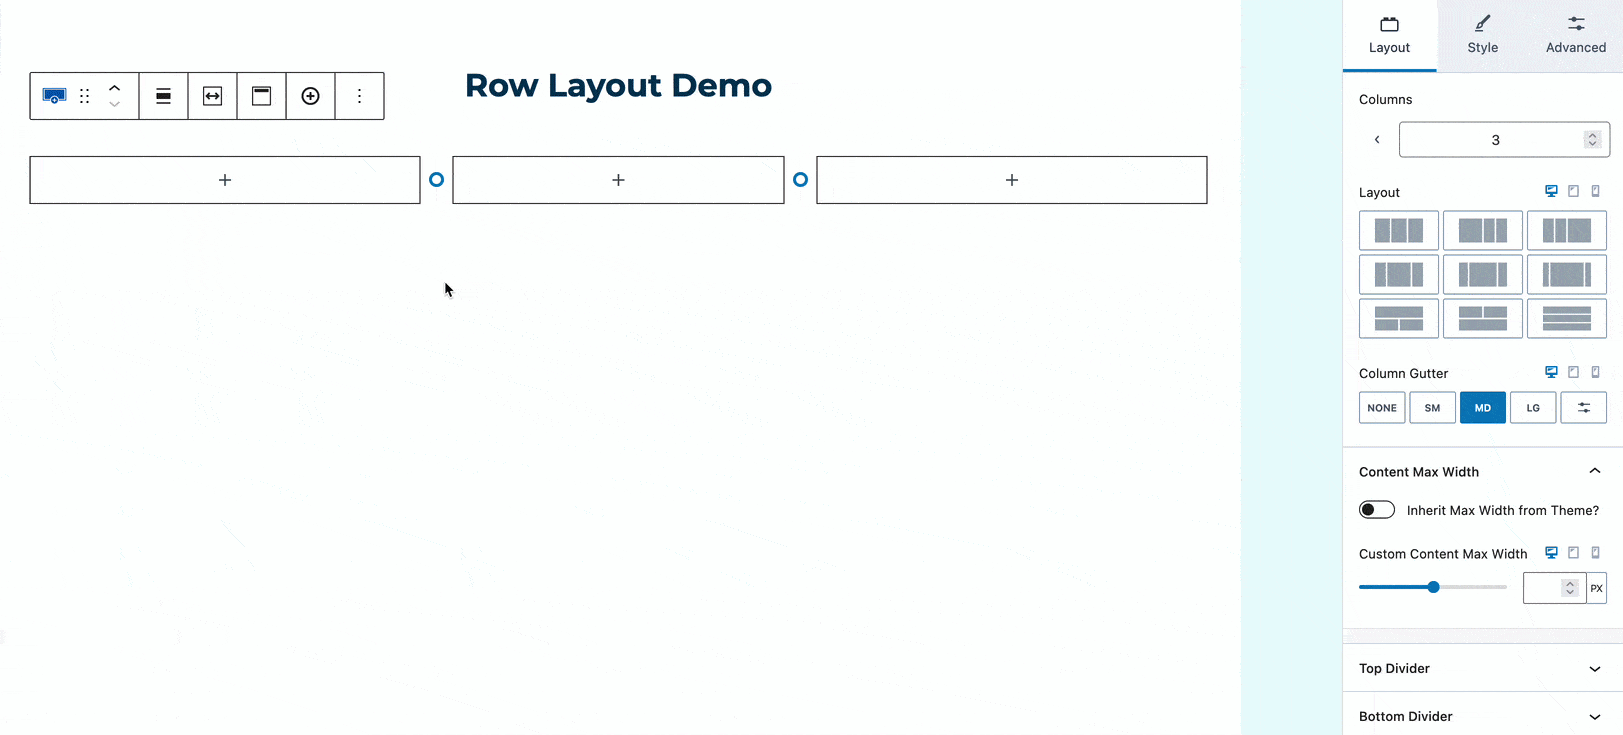 Row Layout Demo